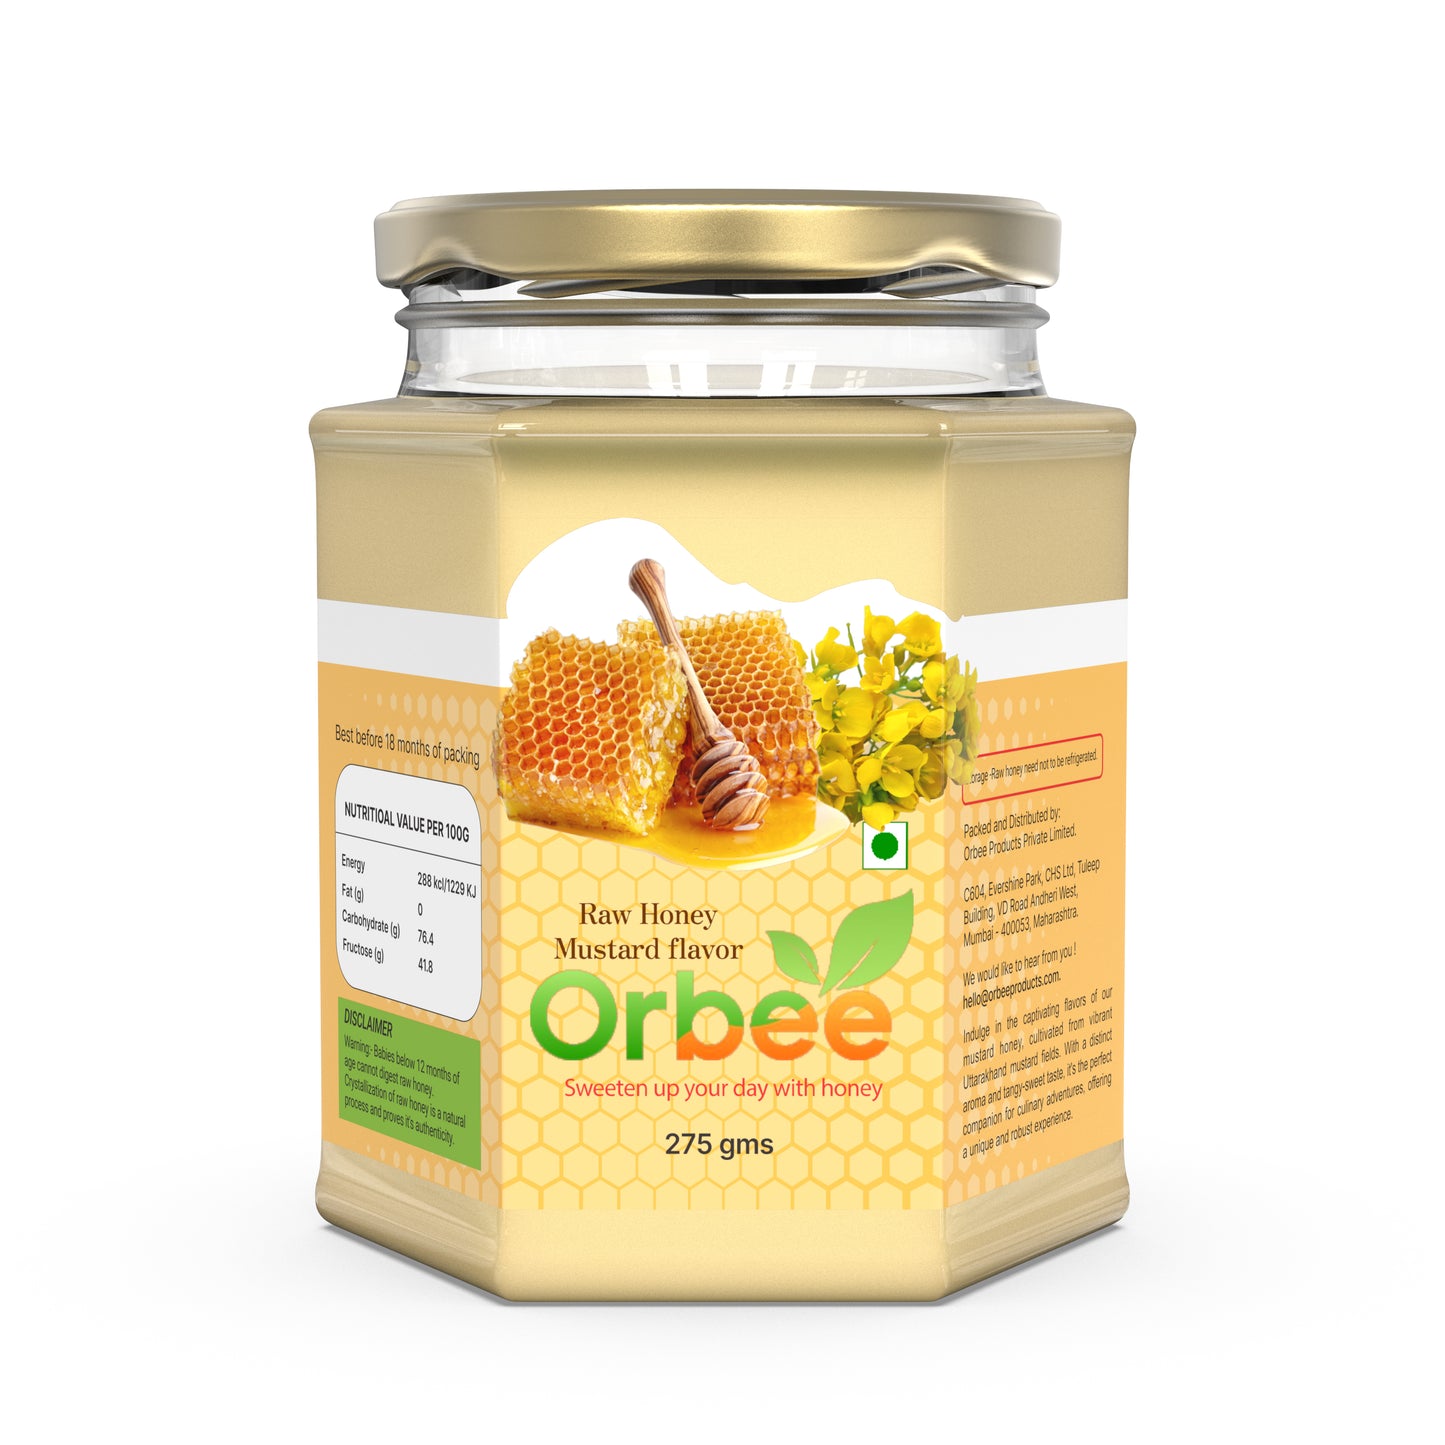 Orbee Mustard Honey 275 gms